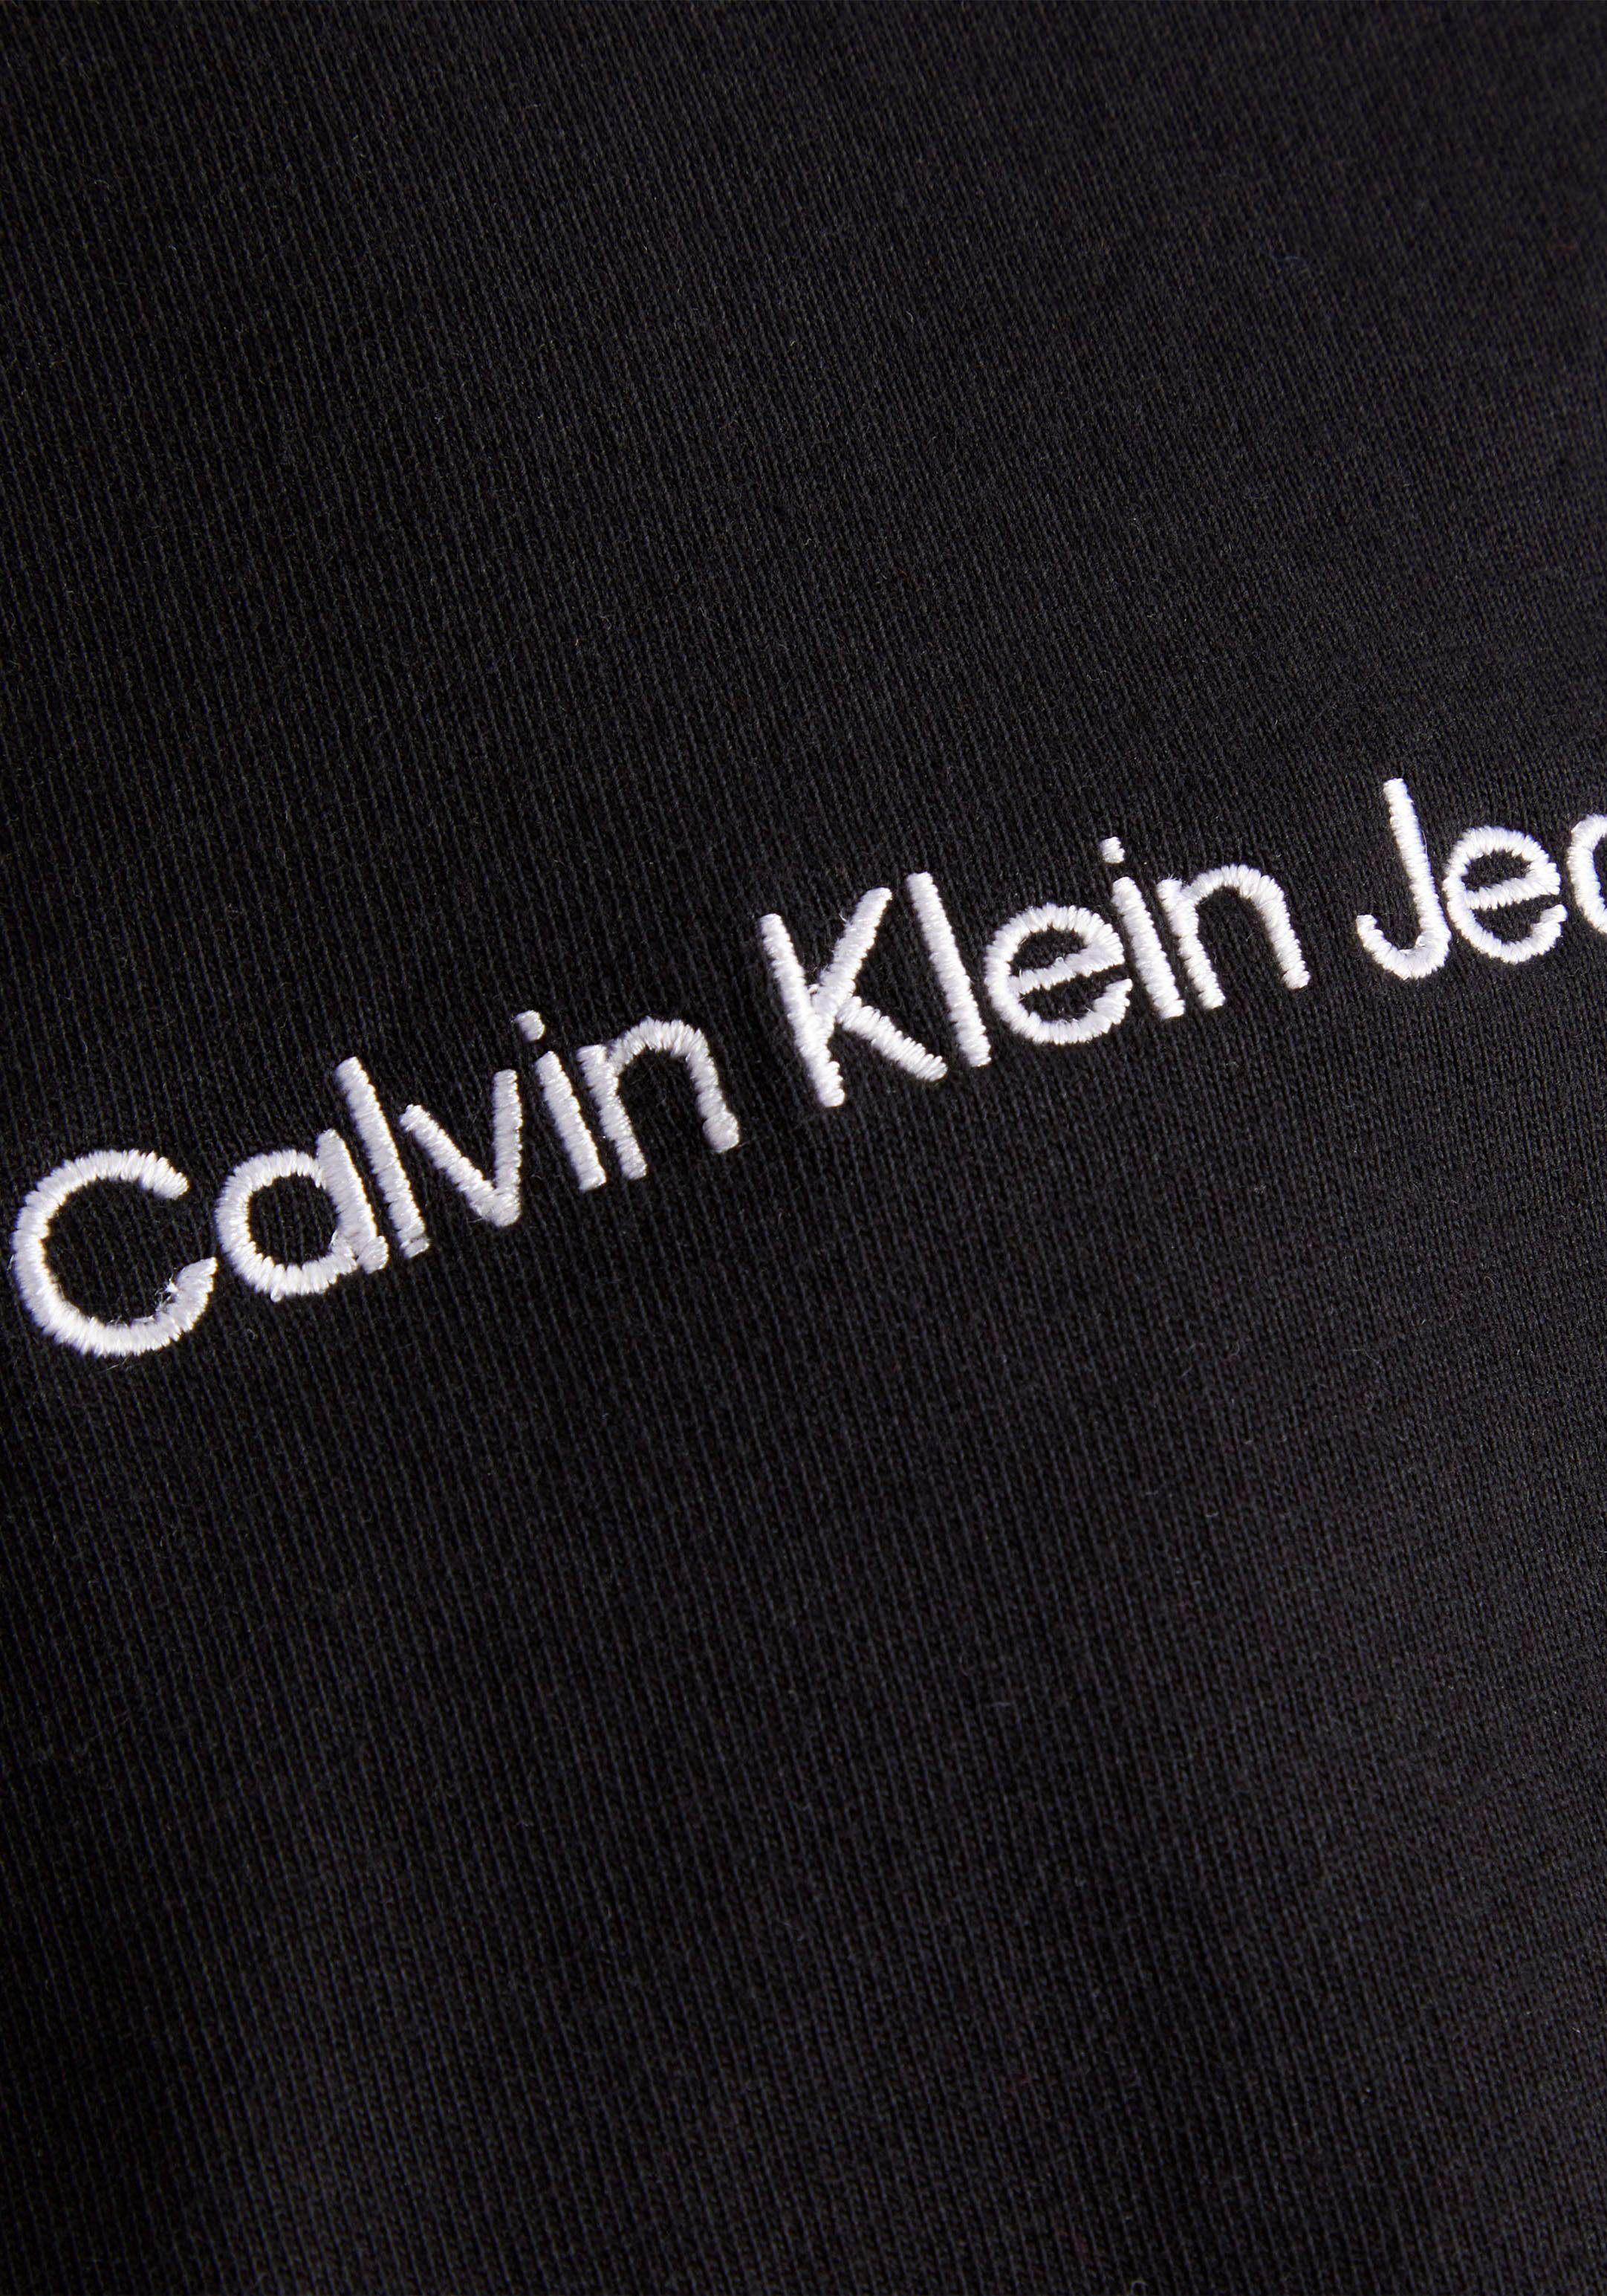 Calvin Klein Jeans Plus T-Shirt schwarz Rundhalsausschnitt mit